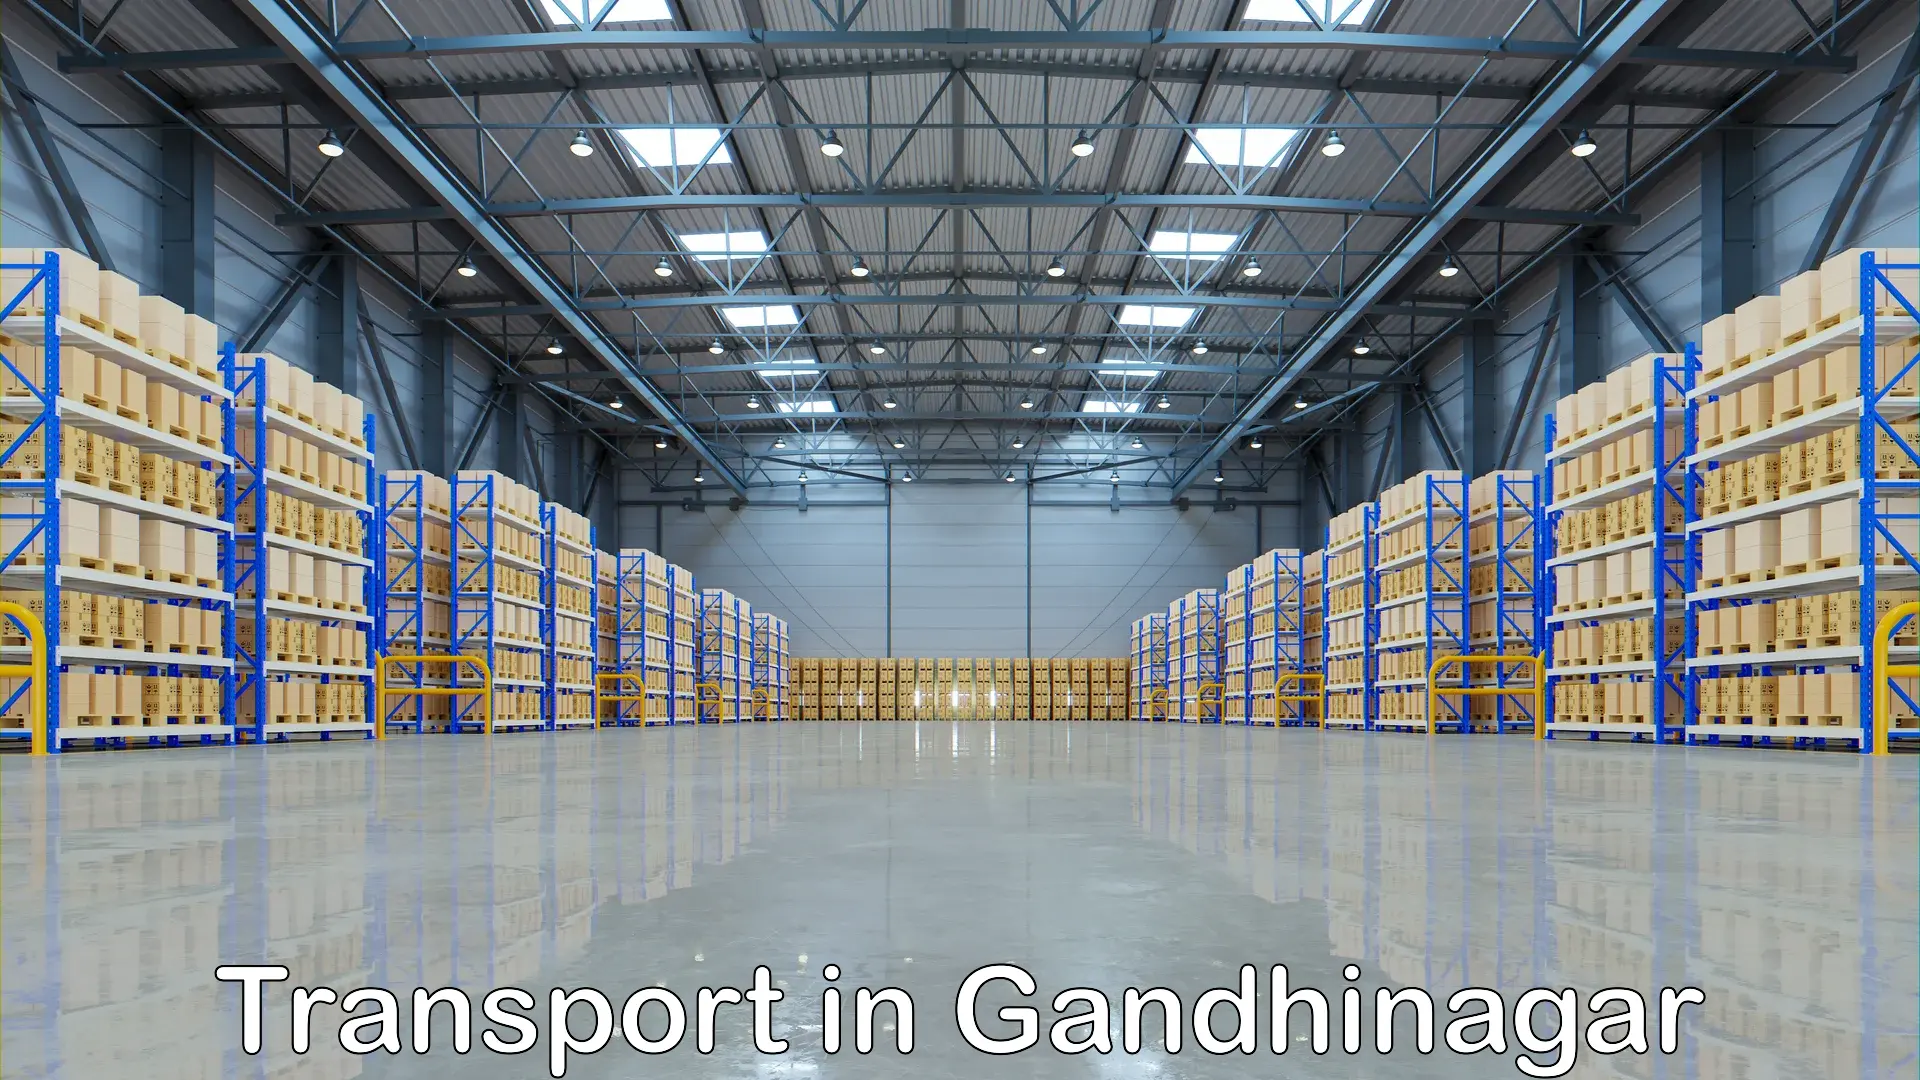 Cargo transport services in Gandhinagar